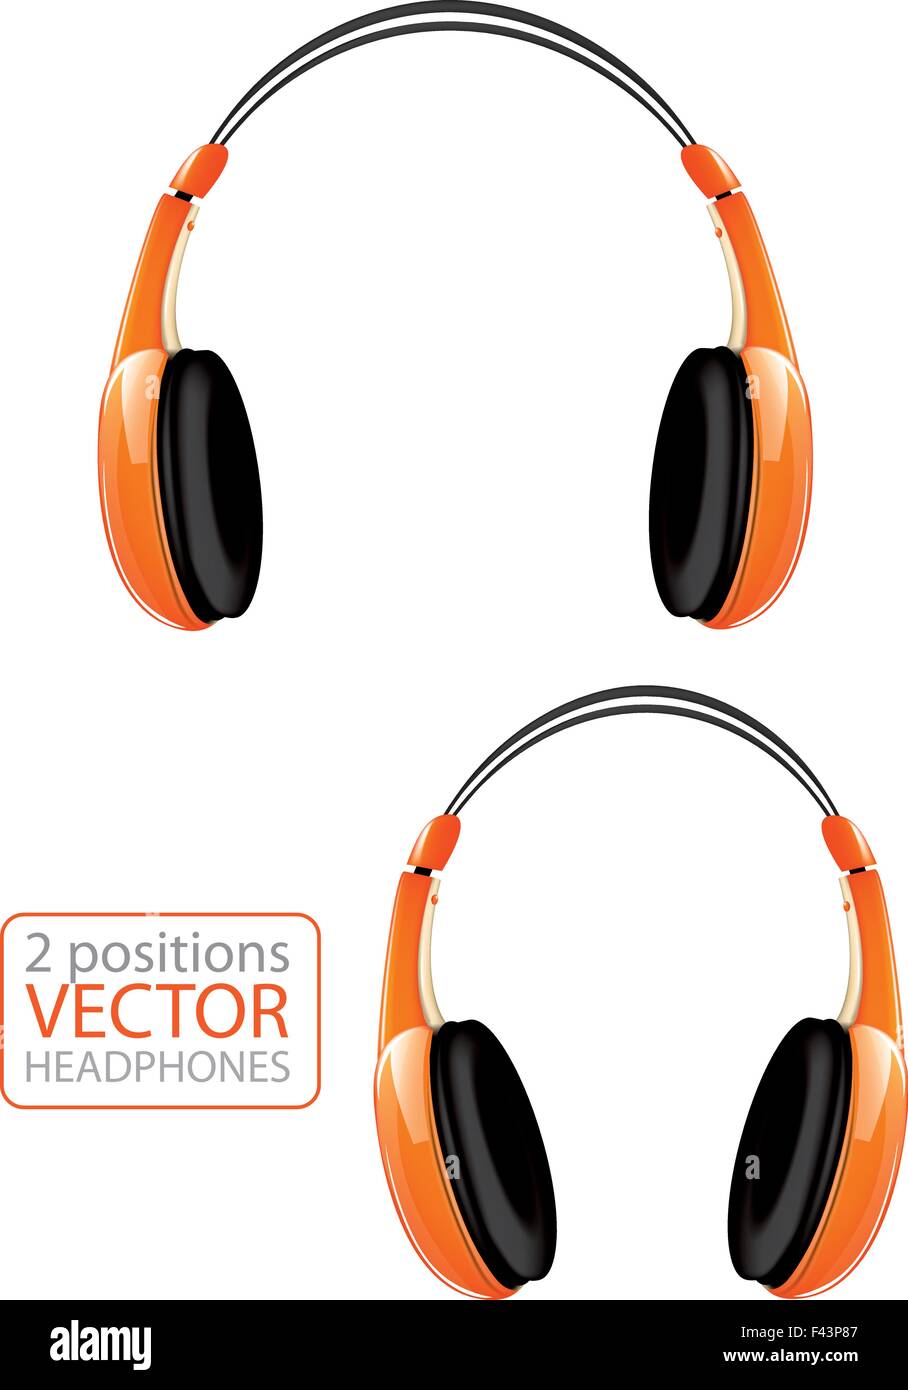 Orange vector headphones Stock Vector